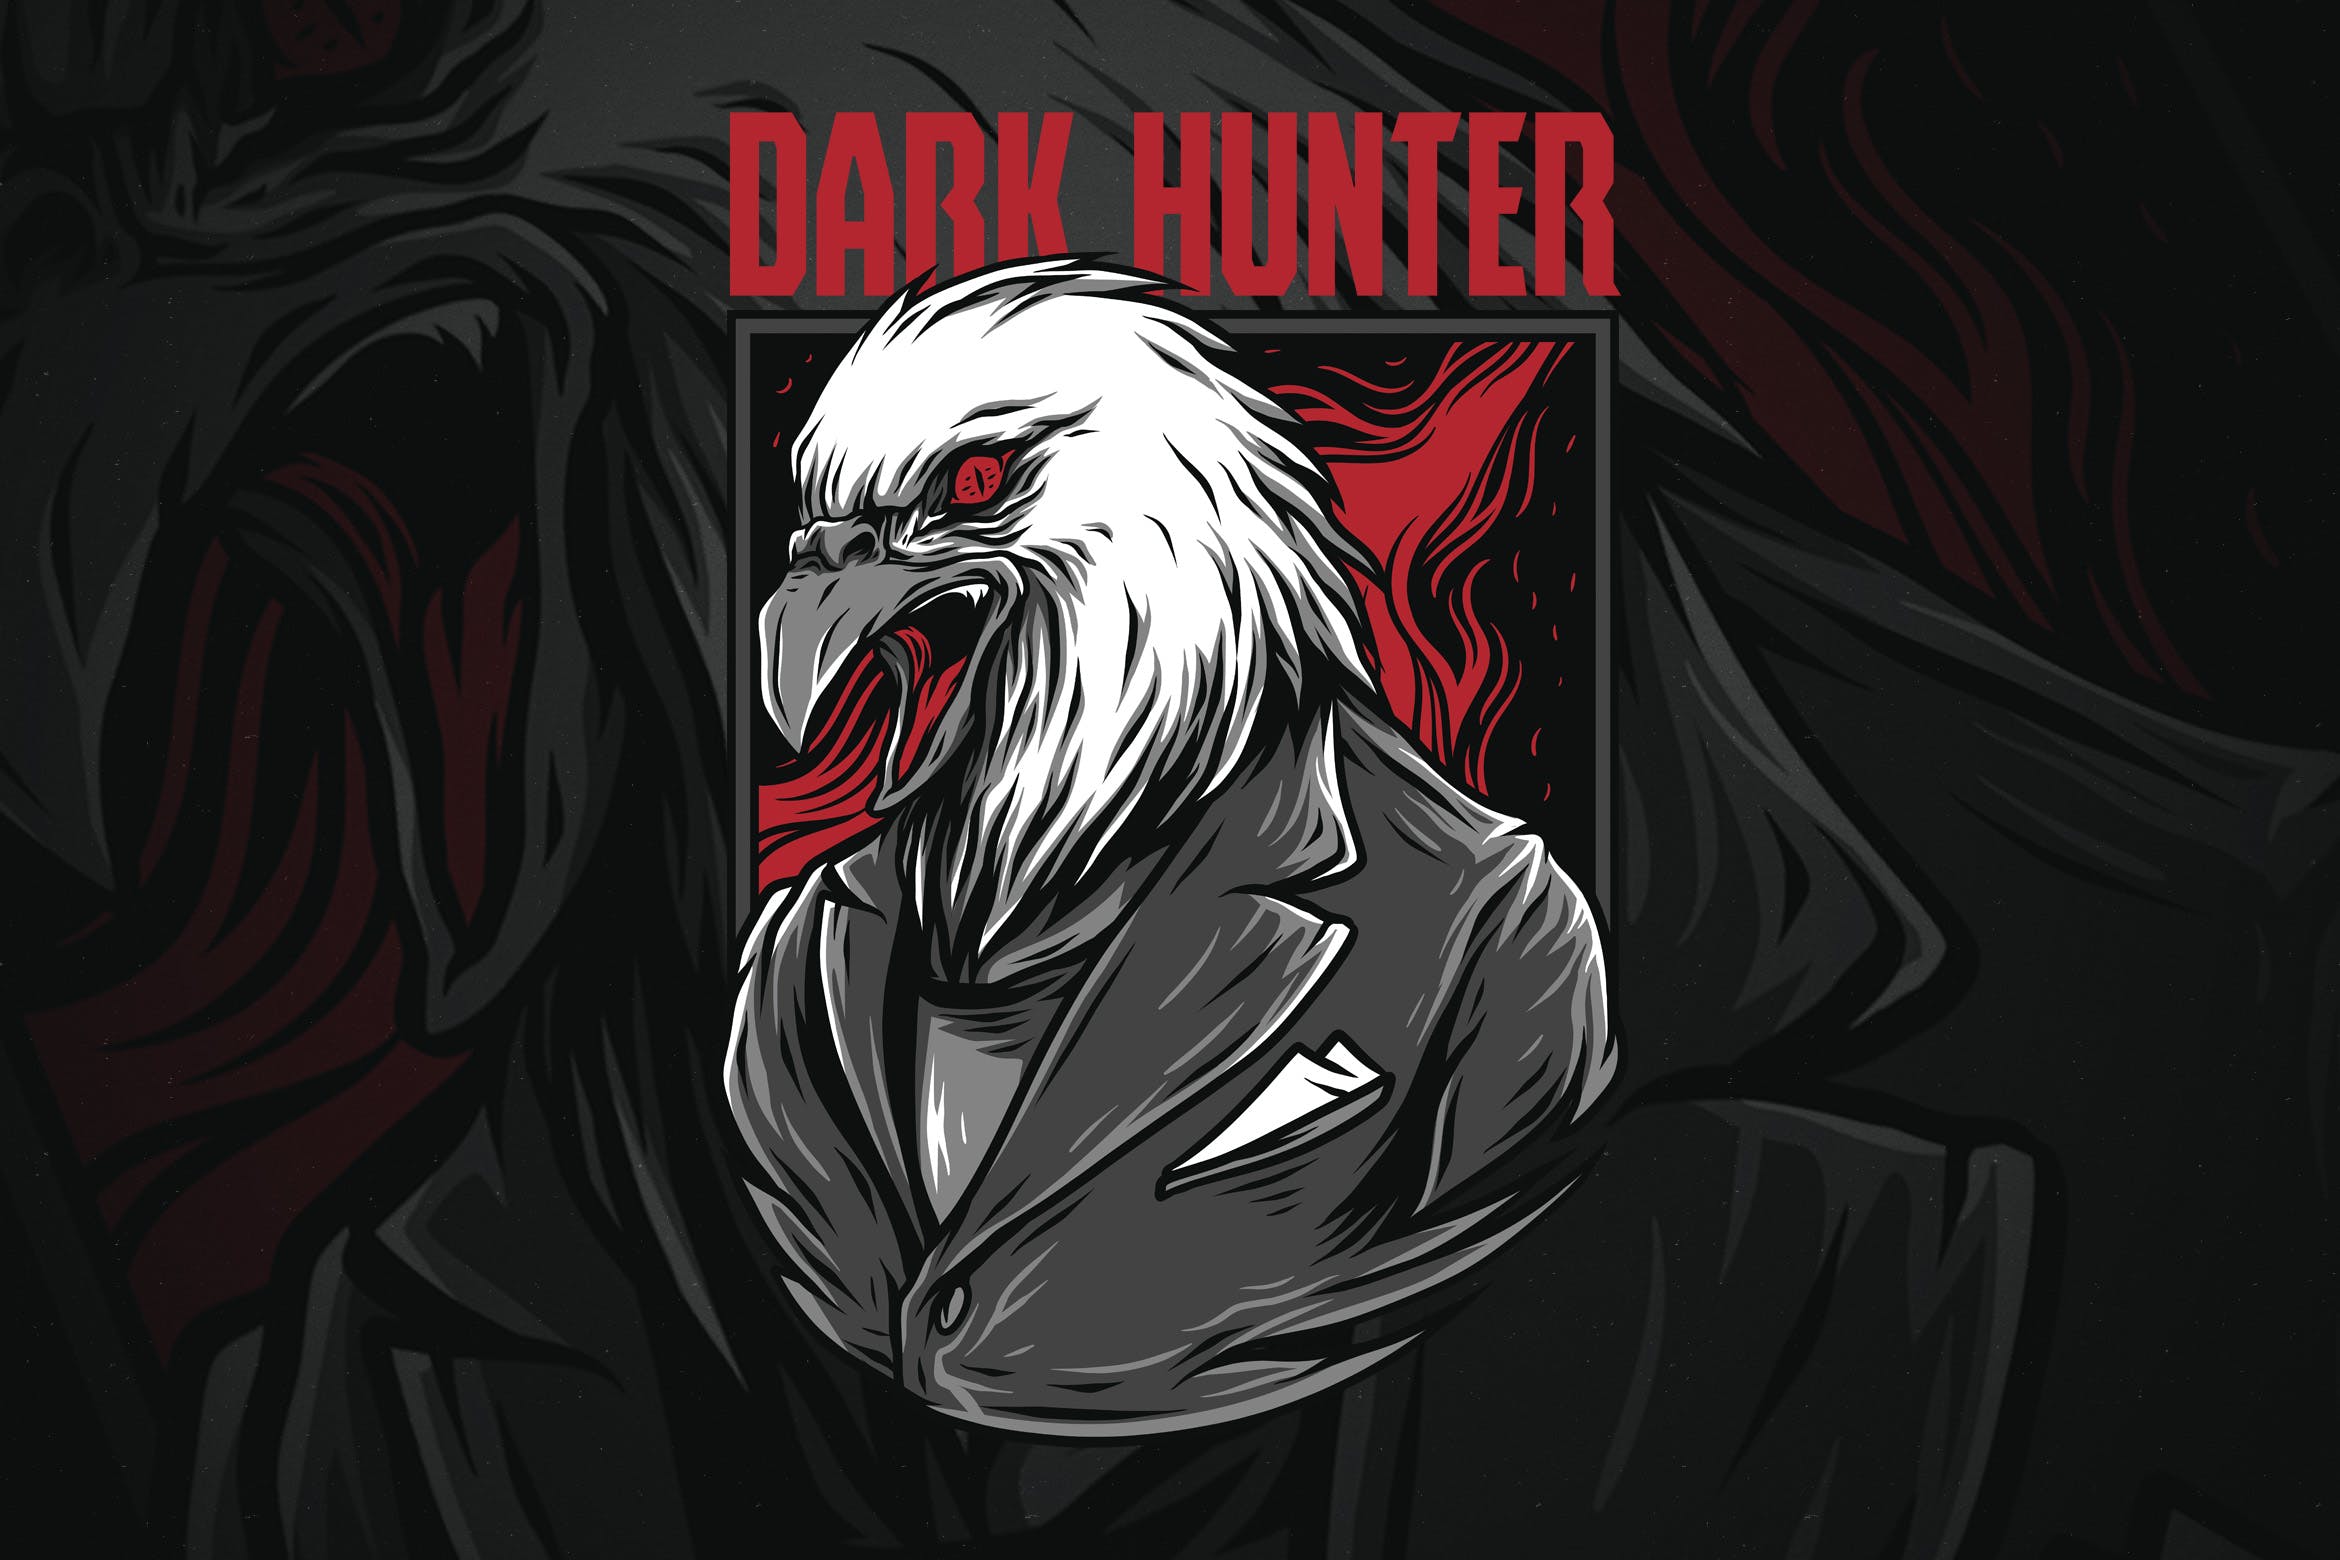 黑暗猎鹰潮牌T恤印花图案蚂蚁素材精选设计素材 Dark Hunter插图